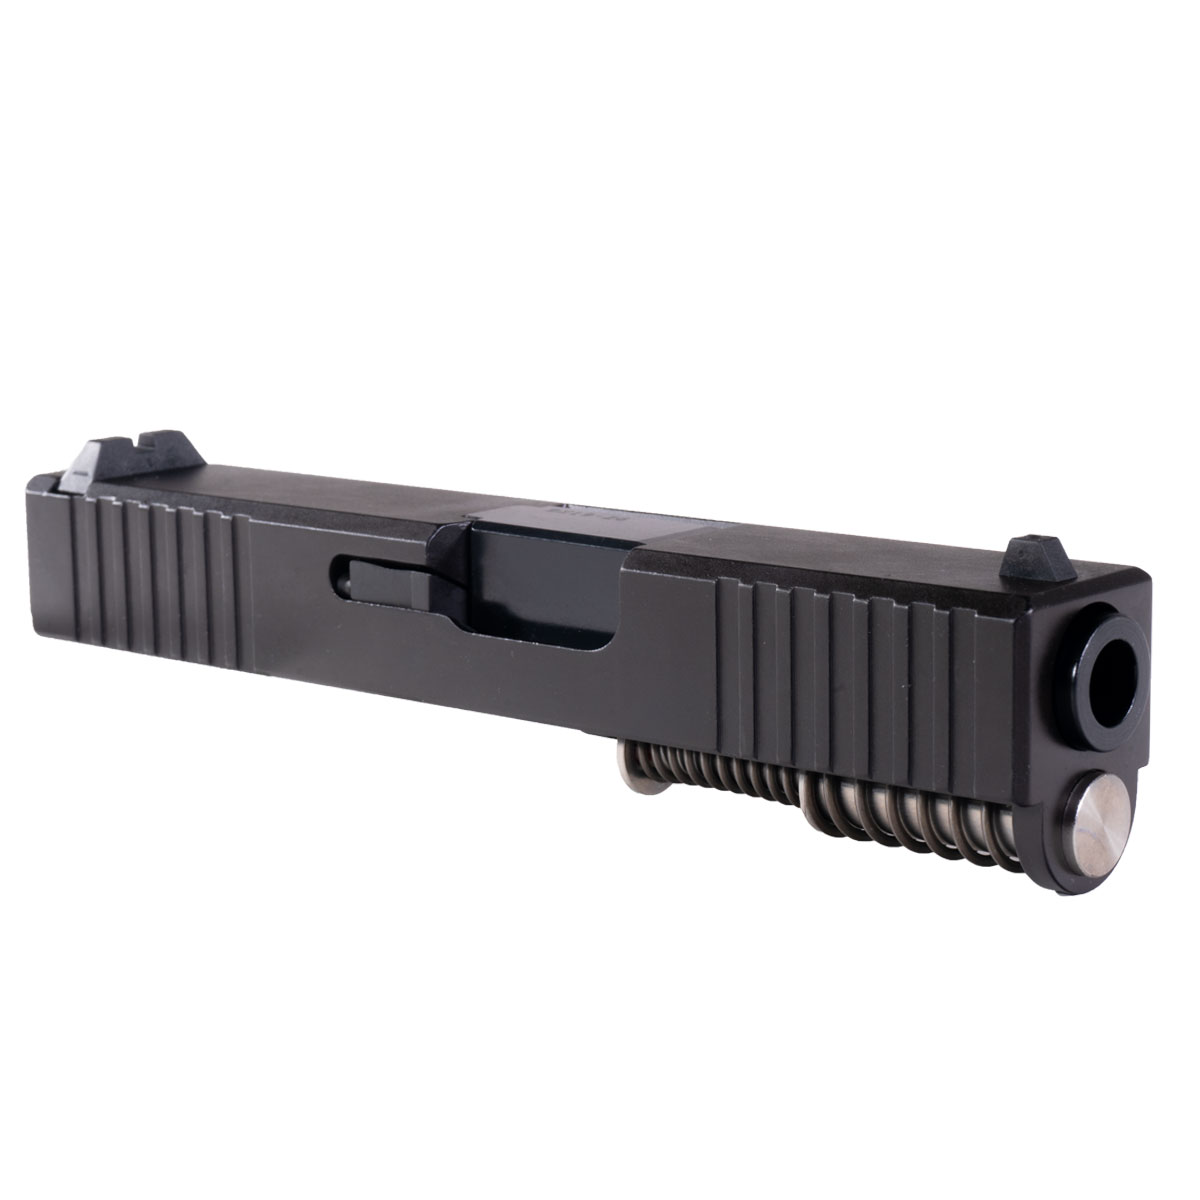 DDS 'Burly' 9mm Complete Slide Kit - Glock 26 Gen 1-2 Compatible